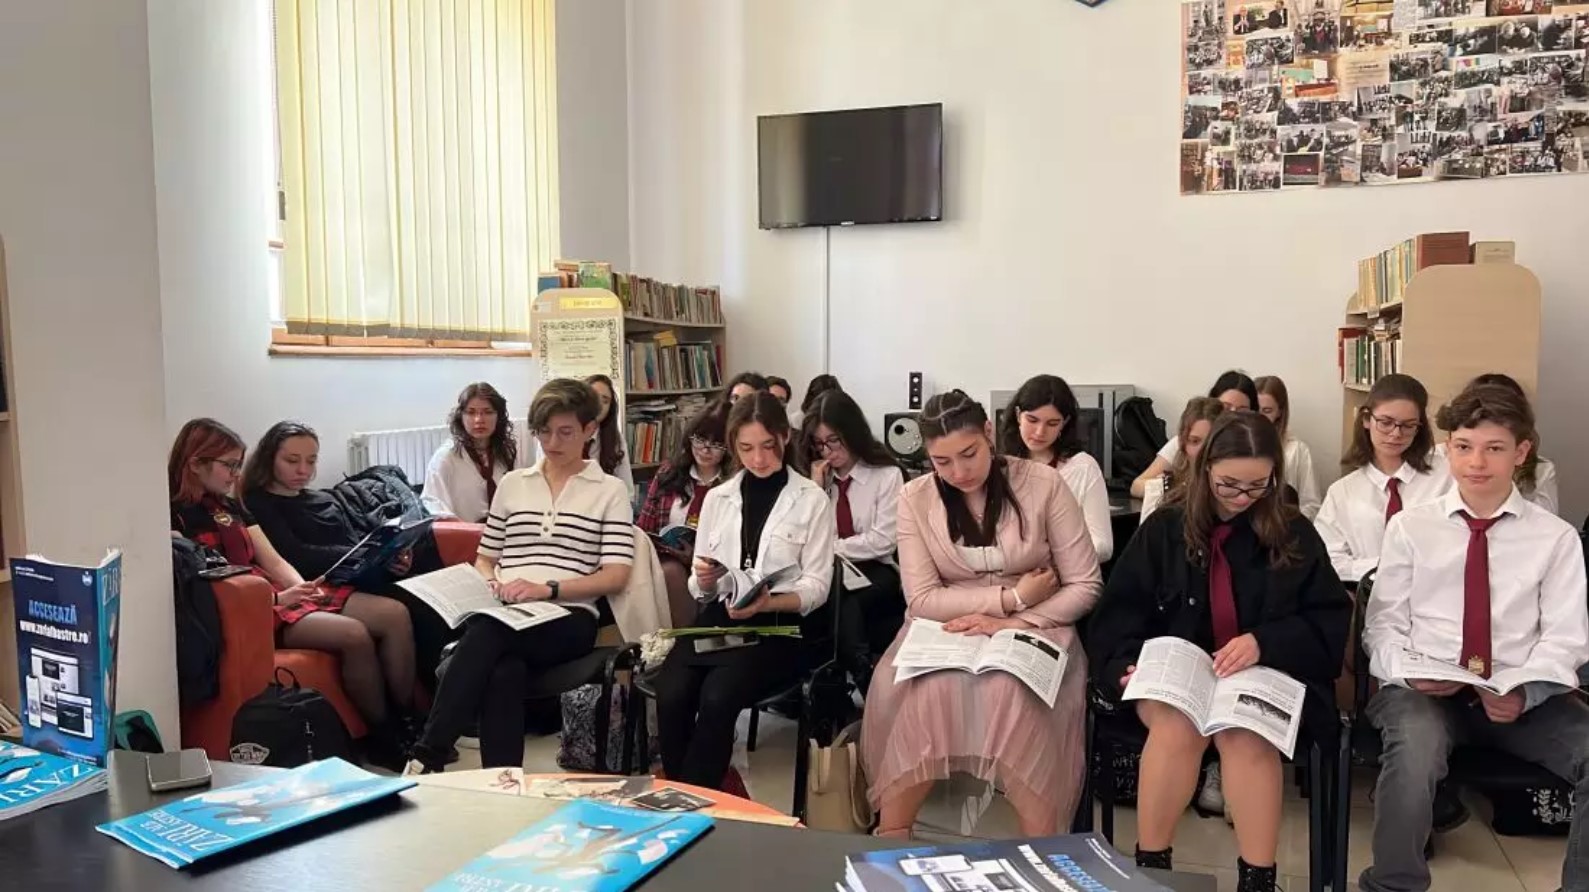 Constanța 100%: Evenimente la Colegiul Național Mircea cel Bătrân din Constanța: lansarea unui nou număr al revistei Zări Alb Astre și inaugurarea Bibliotecii virtuale